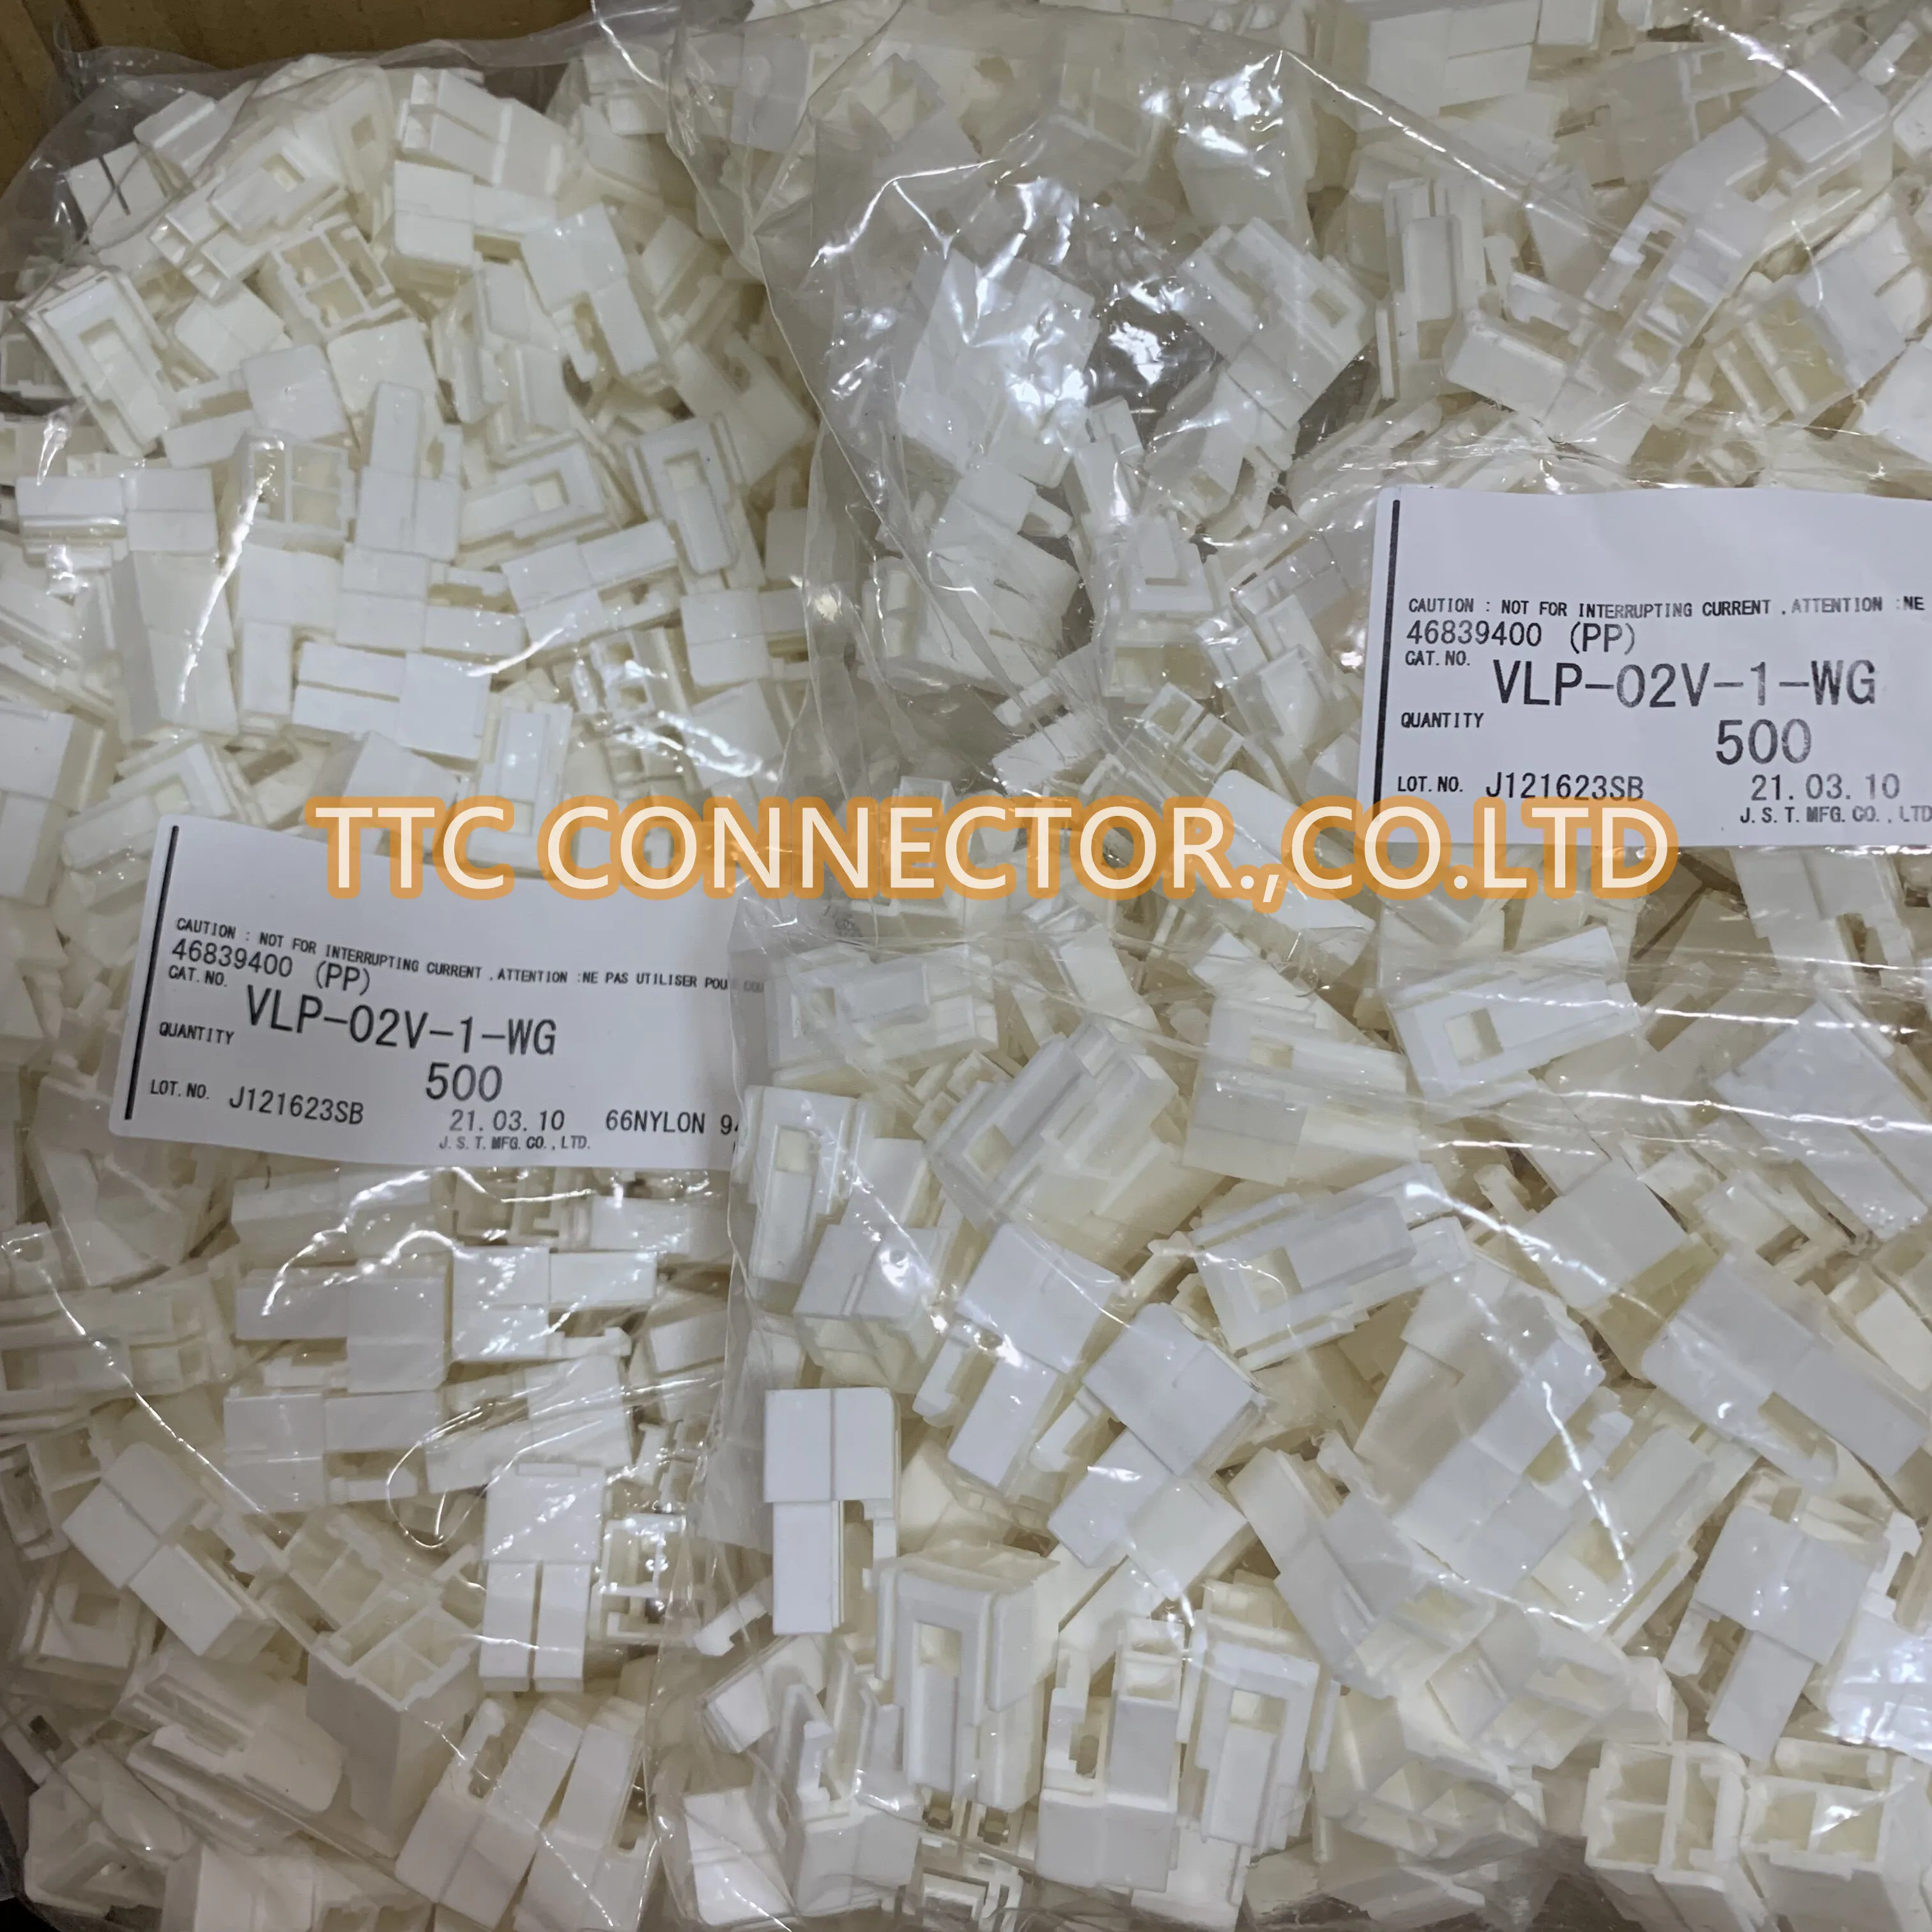 

10pcs/lot VLP-02V-1-WG Connector Plastic case 100% New and Original